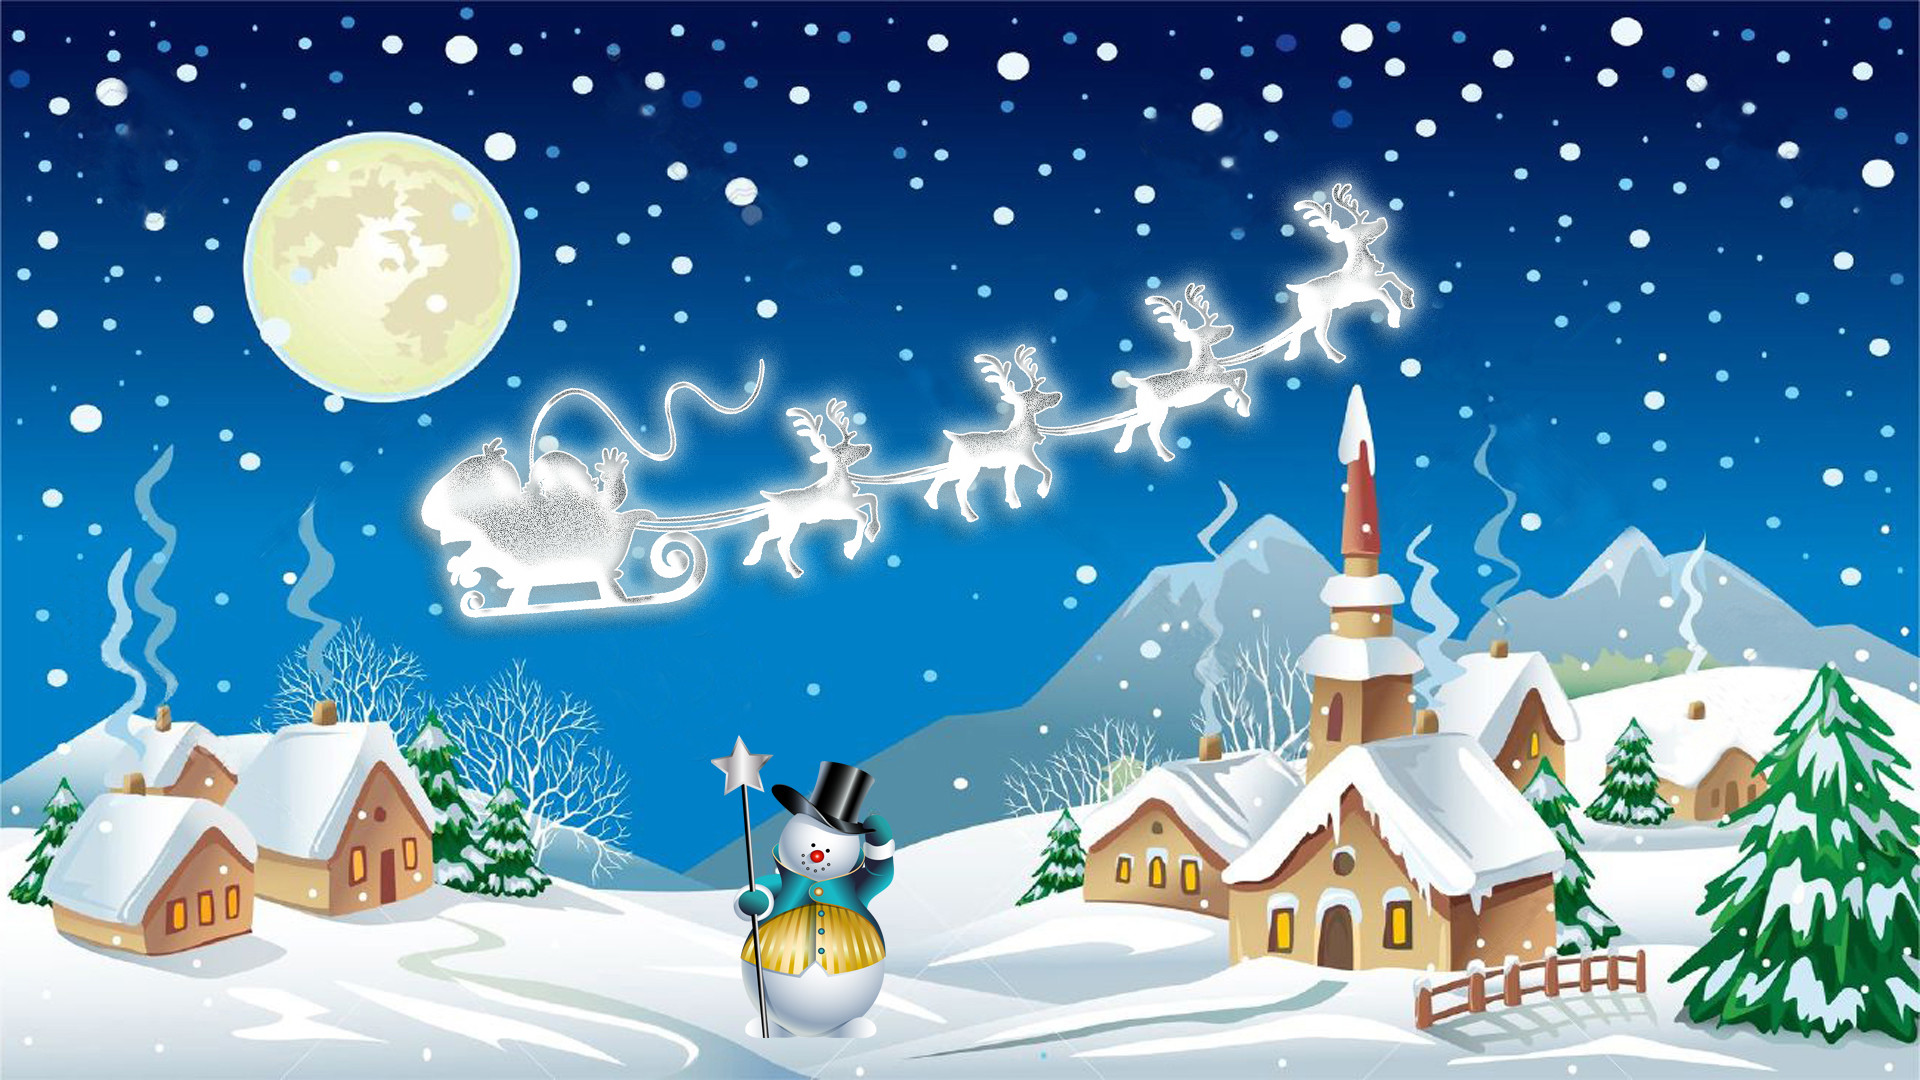 santa claus live wallpaper,heiligabend,winter,illustration,weihnachten,himmel